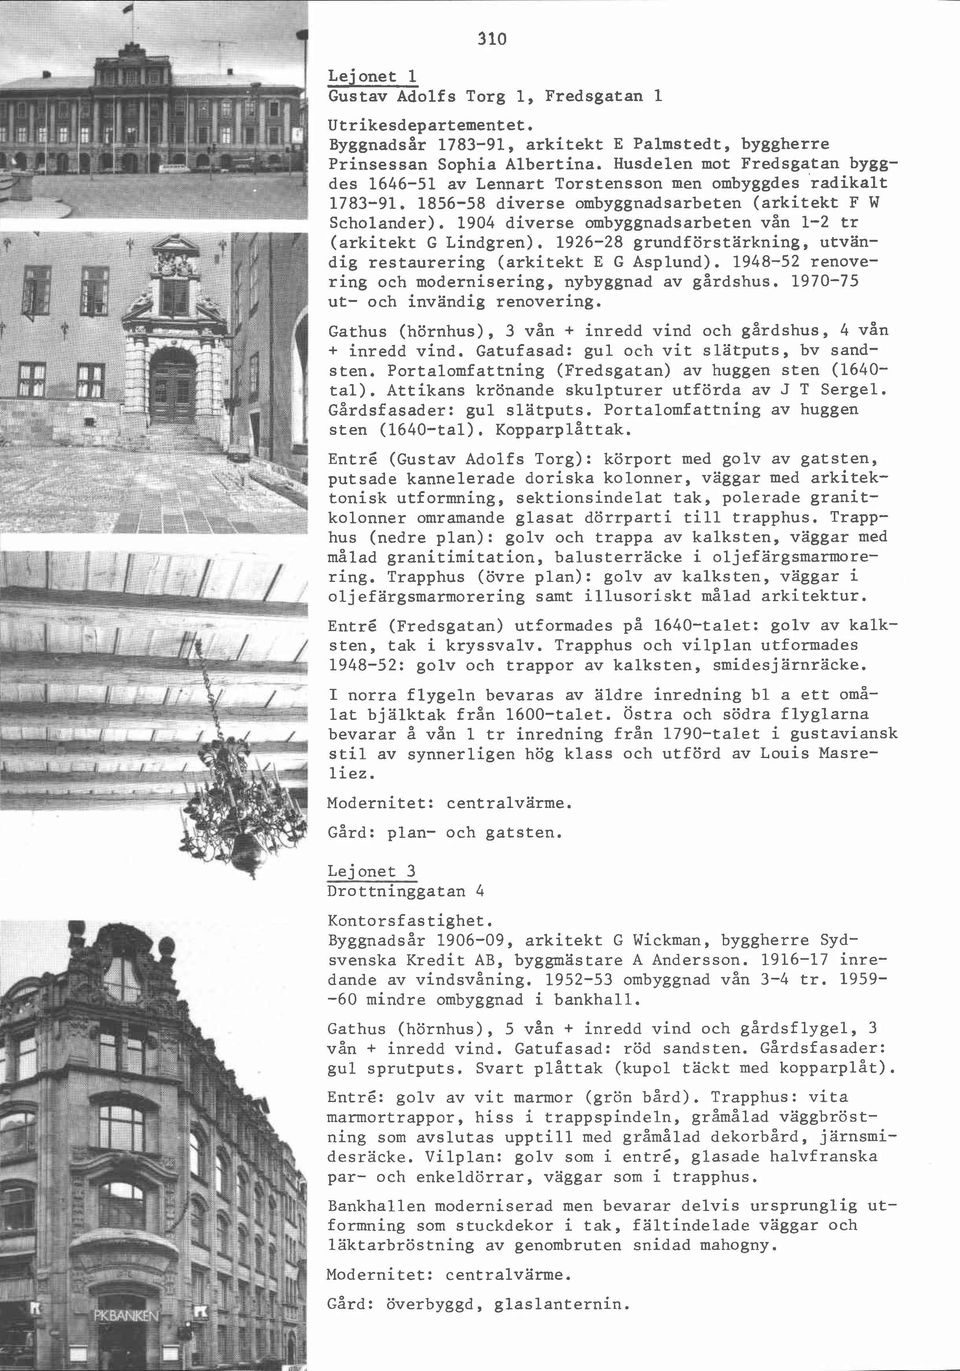 1904 diverse ombyggnadsarbeten vån 1-2 tr (arkitekt G Lindgren). 1926-28 grundförstärkning, utvändig restaurering (arkitekt E G Asplund). 1948-52 renovering och modernisering, nybyggnad av gårdshus.